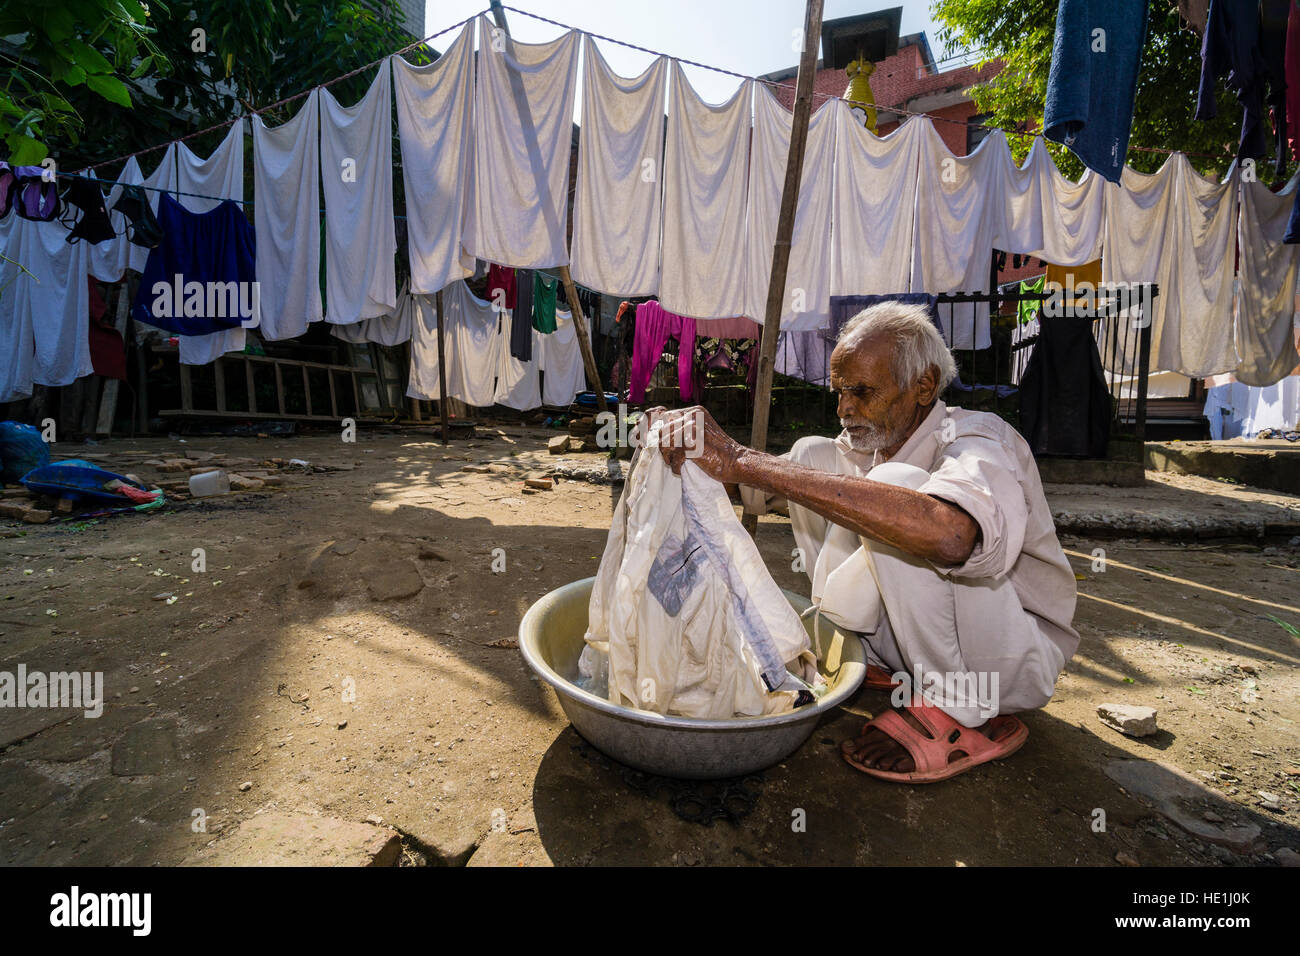 Un uomo sta facendo servizio lavanderia a mano in un cortile Foto Stock